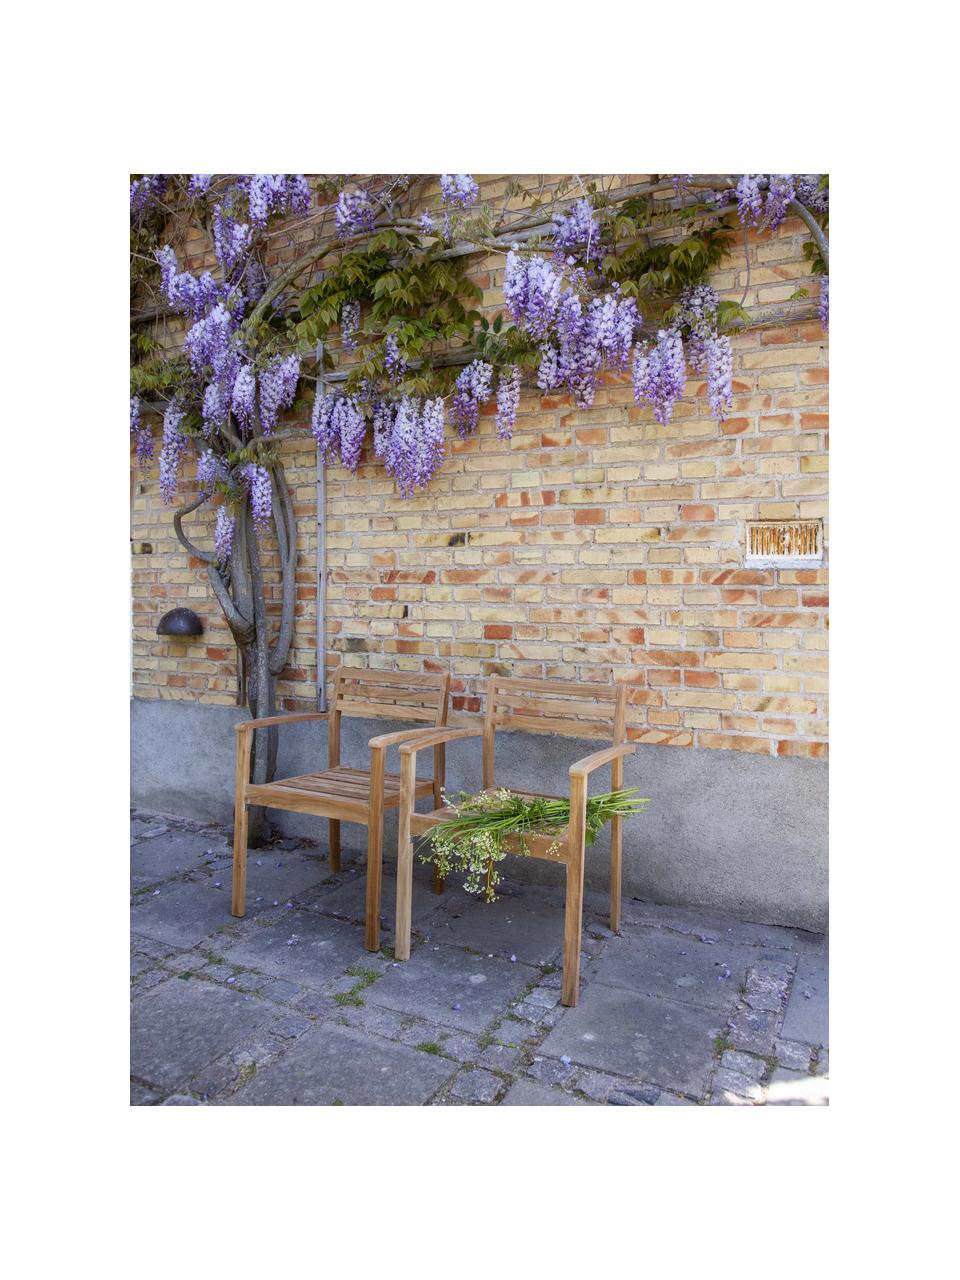 Chaise de jardin en bois de teck Oxford, Bois de teck, Bois de teck, larg. 56 x prof. 53 cm